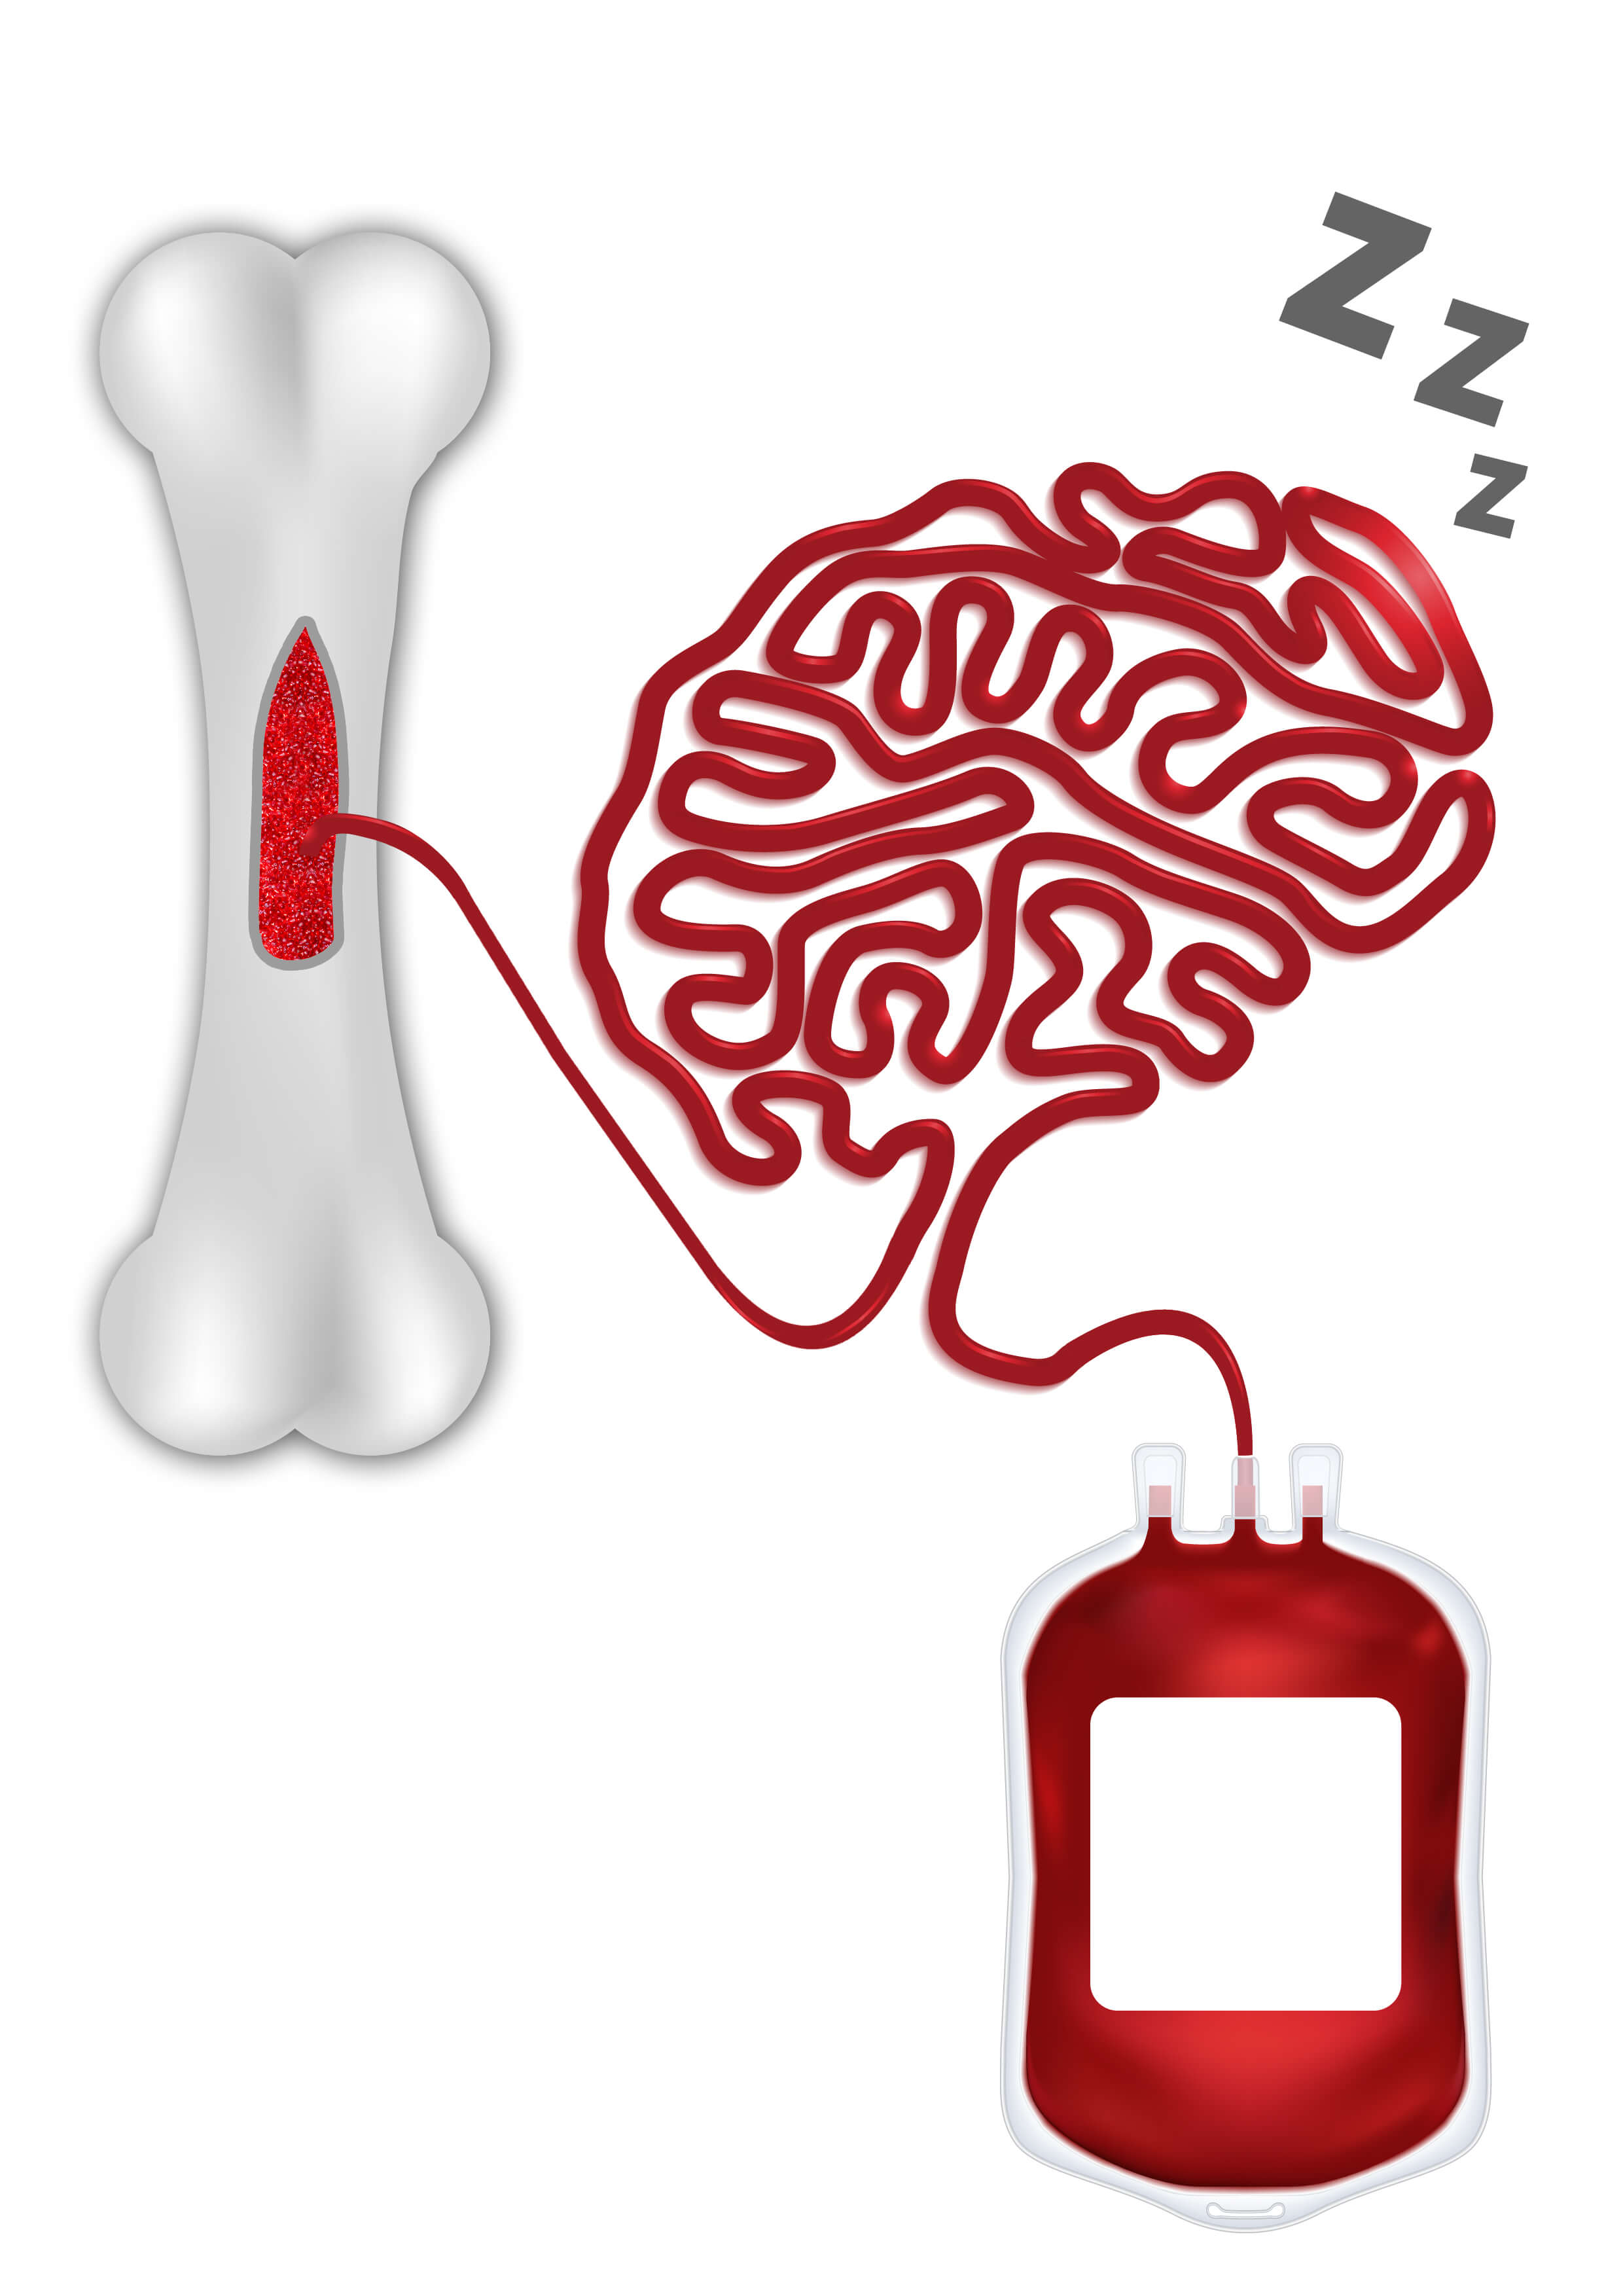 כך משפיעה השינה על נדידת תאי גזע בהקשר של תרומת מוח עצם. אילוסטרציה: דימה אבלסקי